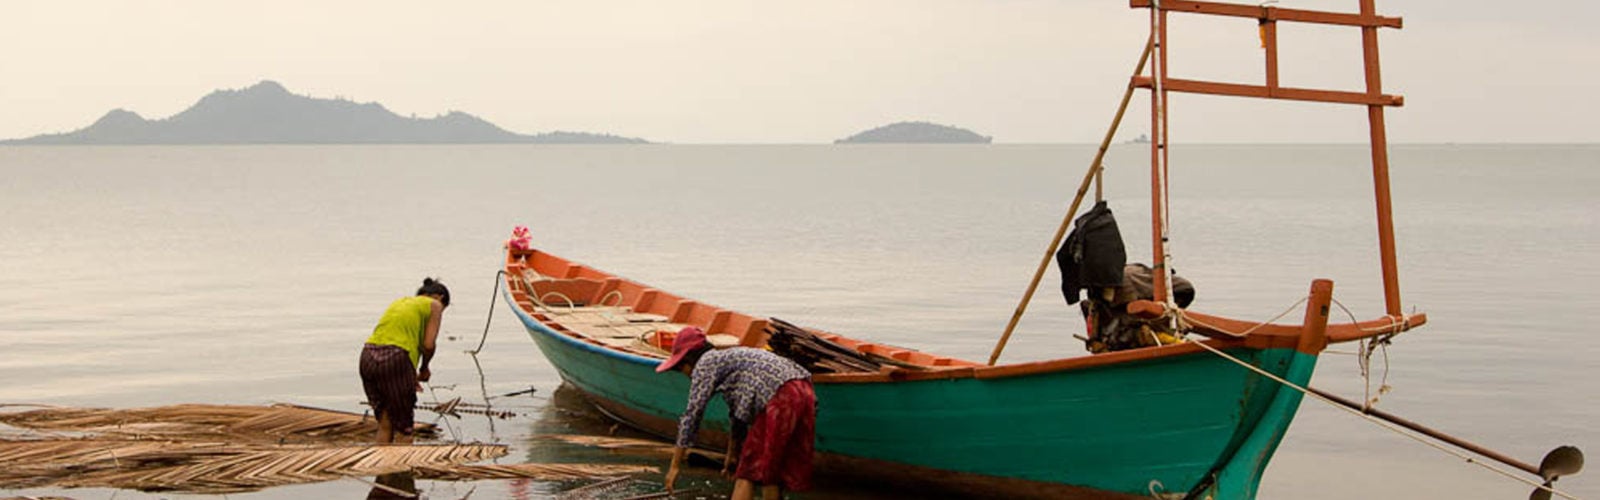 kep-cambodia-boats